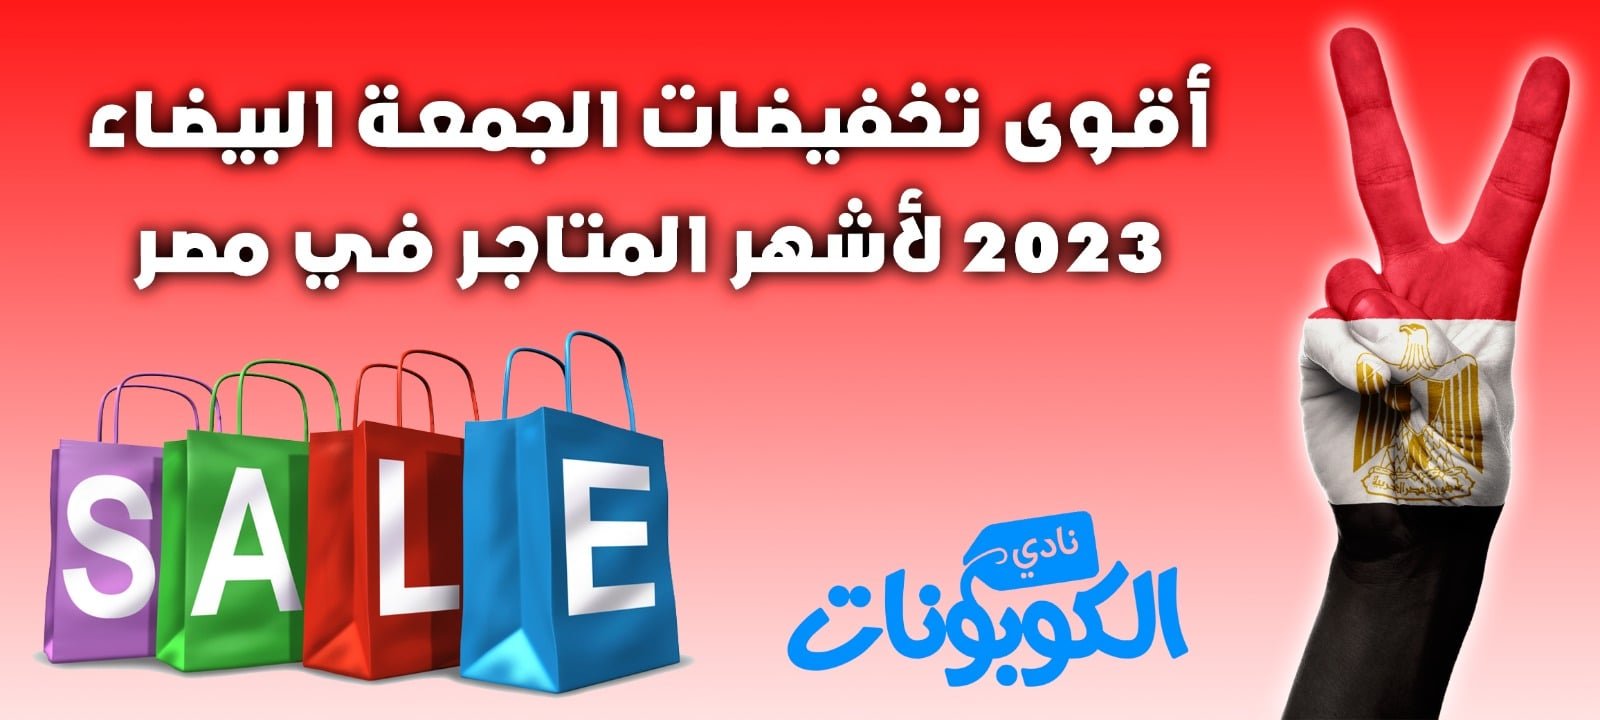 أقوي تخفيضات الجمعة البيضاء 2023 لأشهر المتاجر في مصر